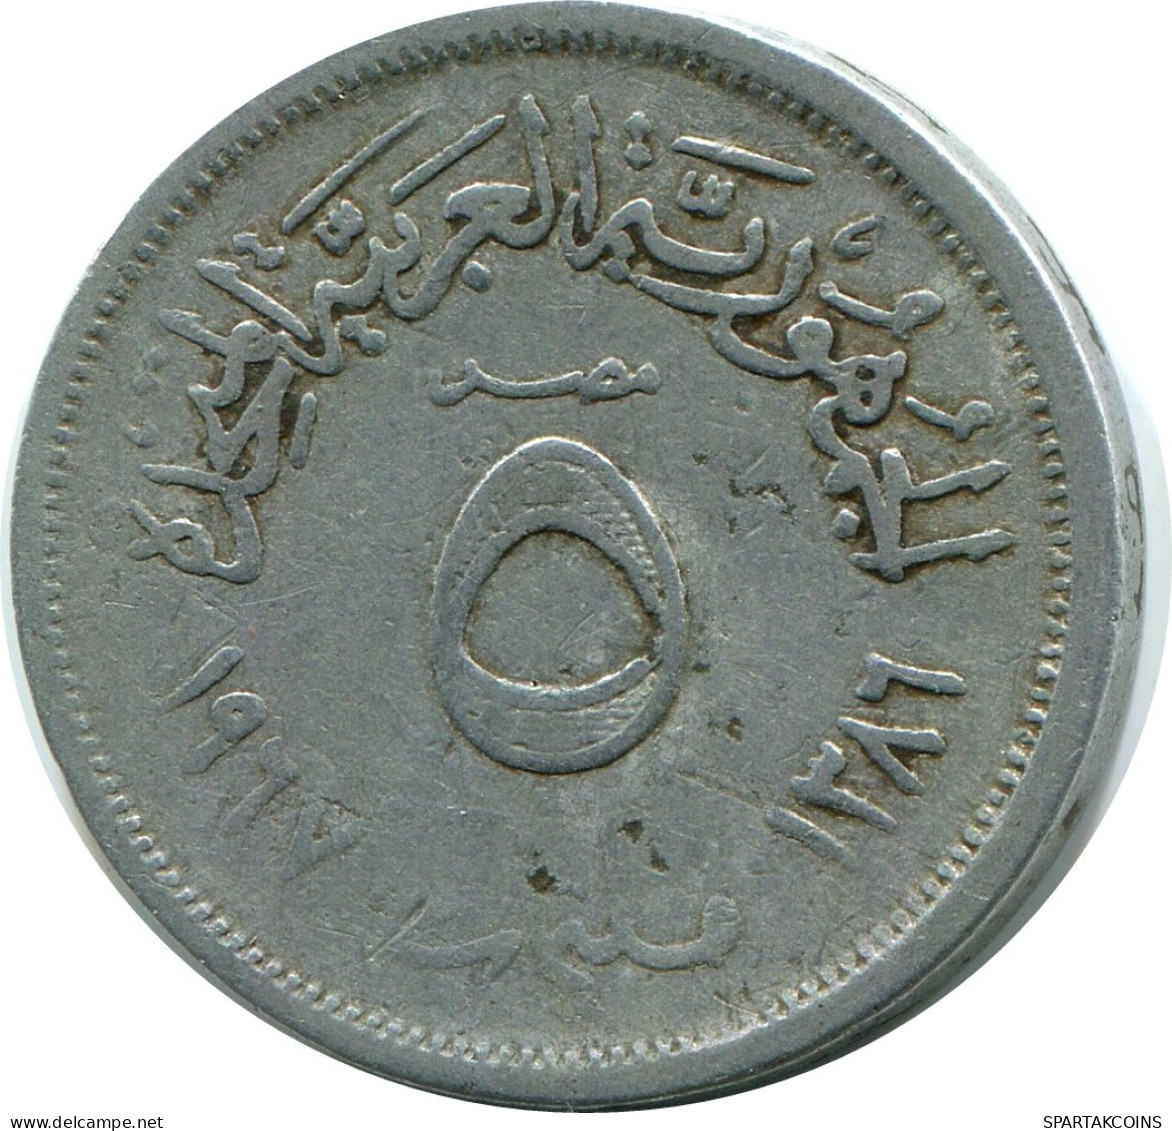 5 MILLIEMES 1967 ÄGYPTEN EGYPT Islamisch Münze #AP138.D.A - Egitto